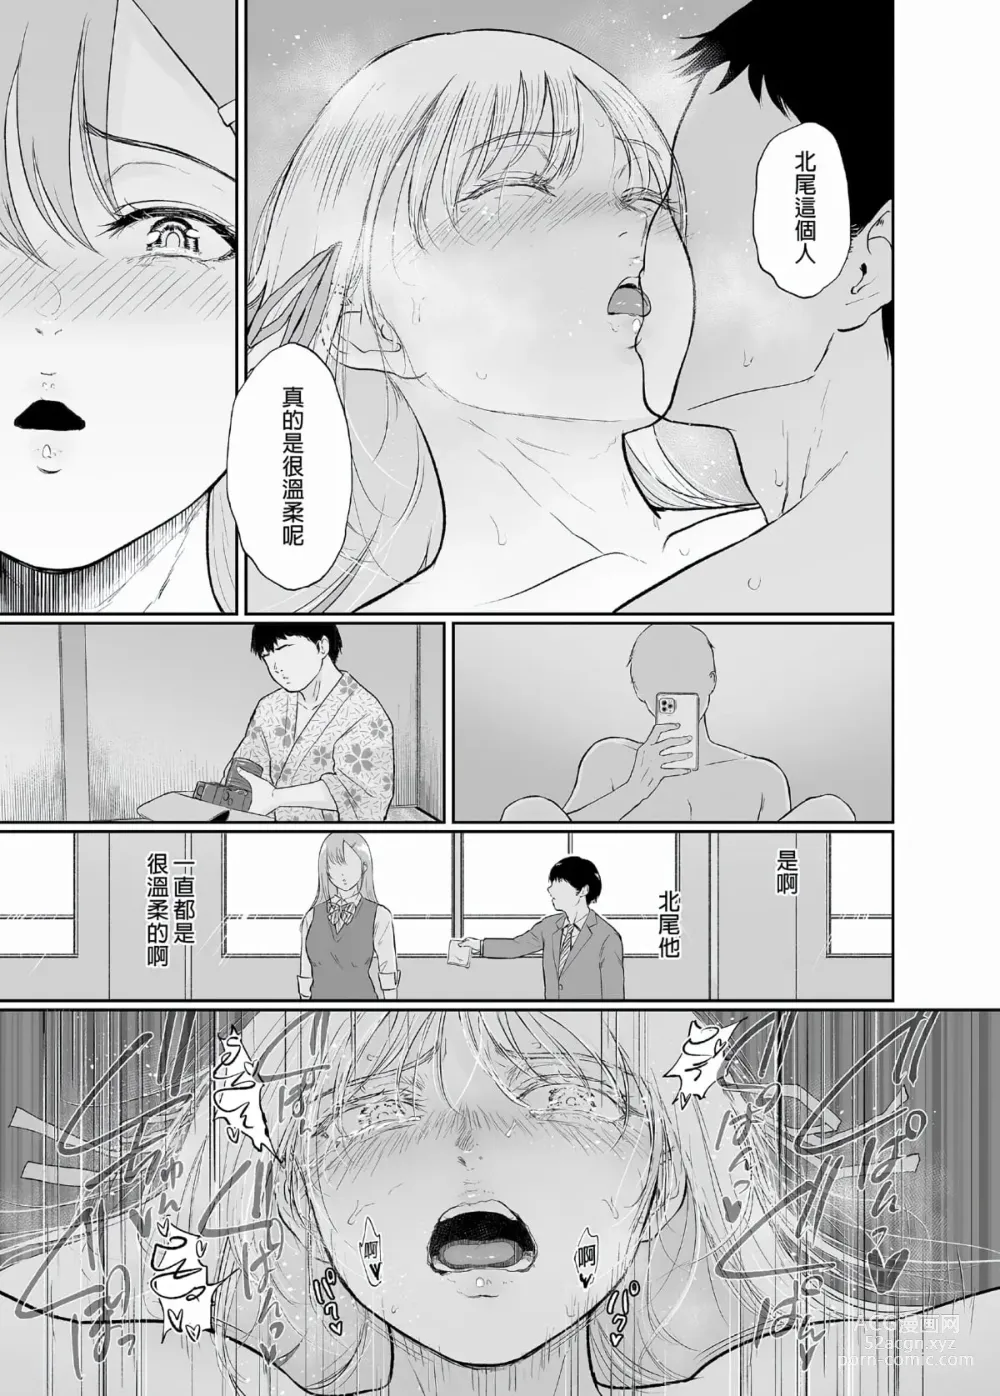 Page 188 of doujinshi マリエさんと温泉+マリエさんとお風呂場+処女を散らす部屋